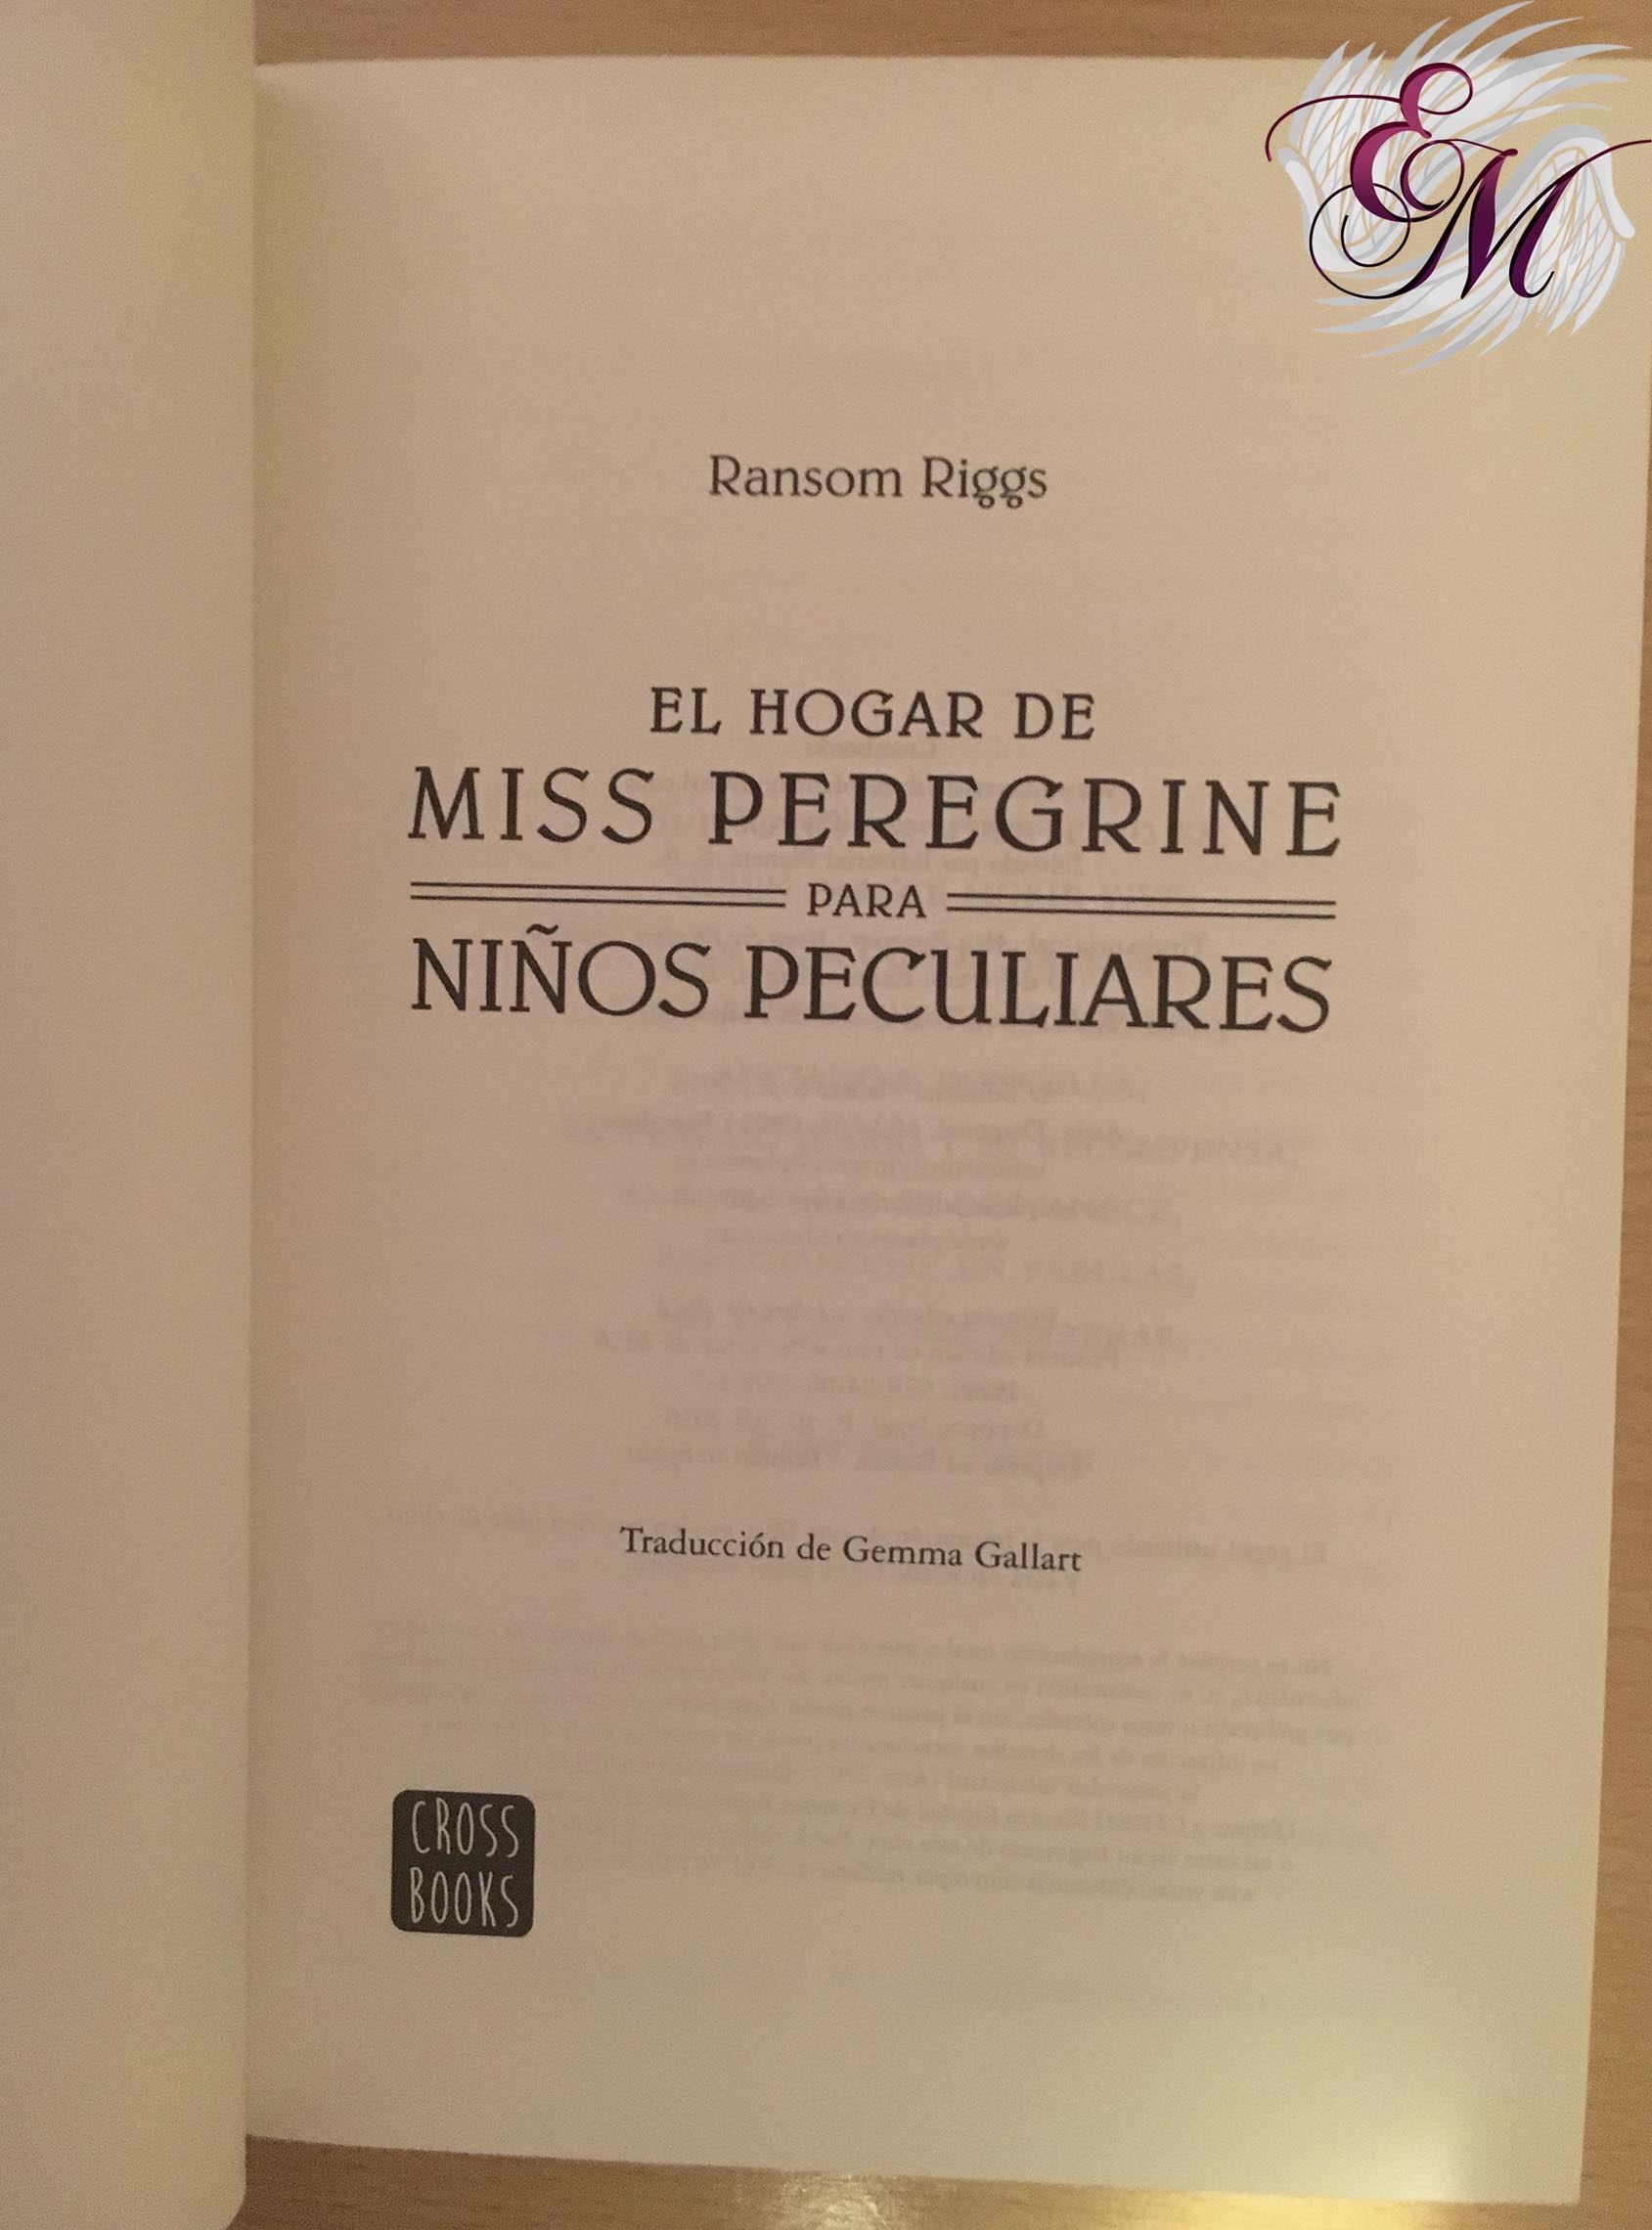 El hogar de Miss Peregrine para niños peculiares de Ransom Riggs - Reseña